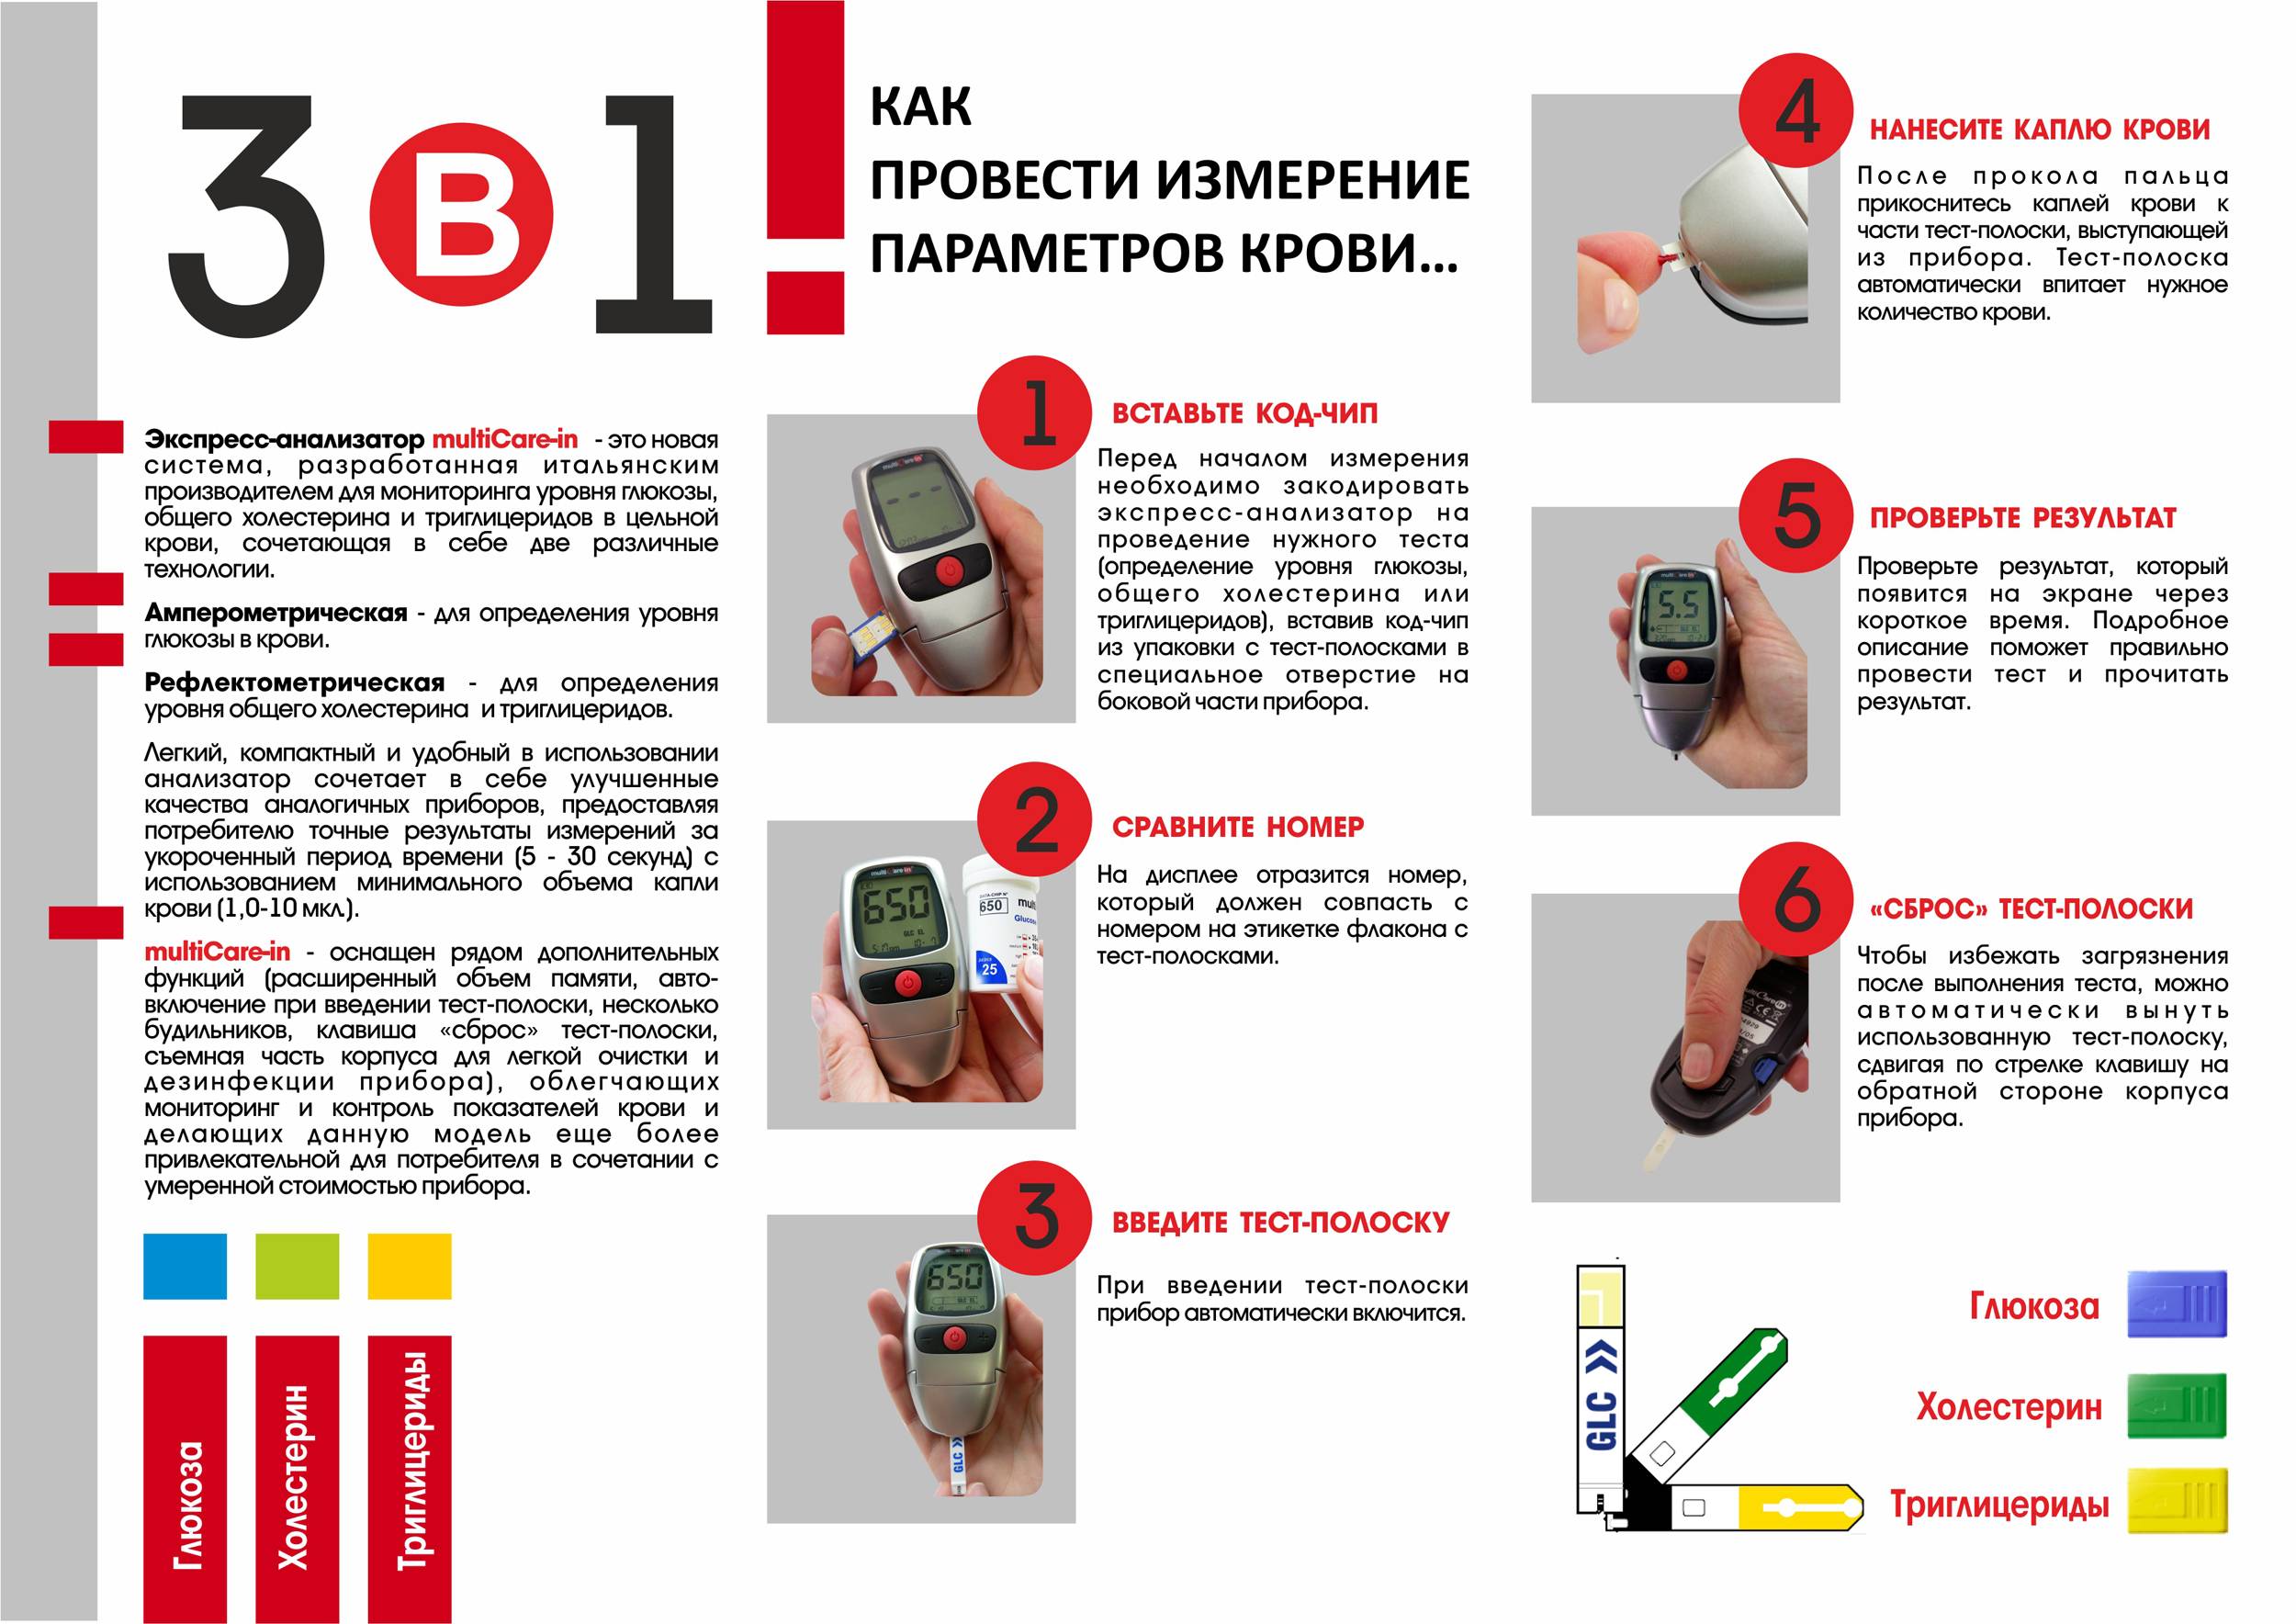 Как правильно пользоваться глюкометром: основные правила. как пользоваться глюкометром: инструкция и рекомендации